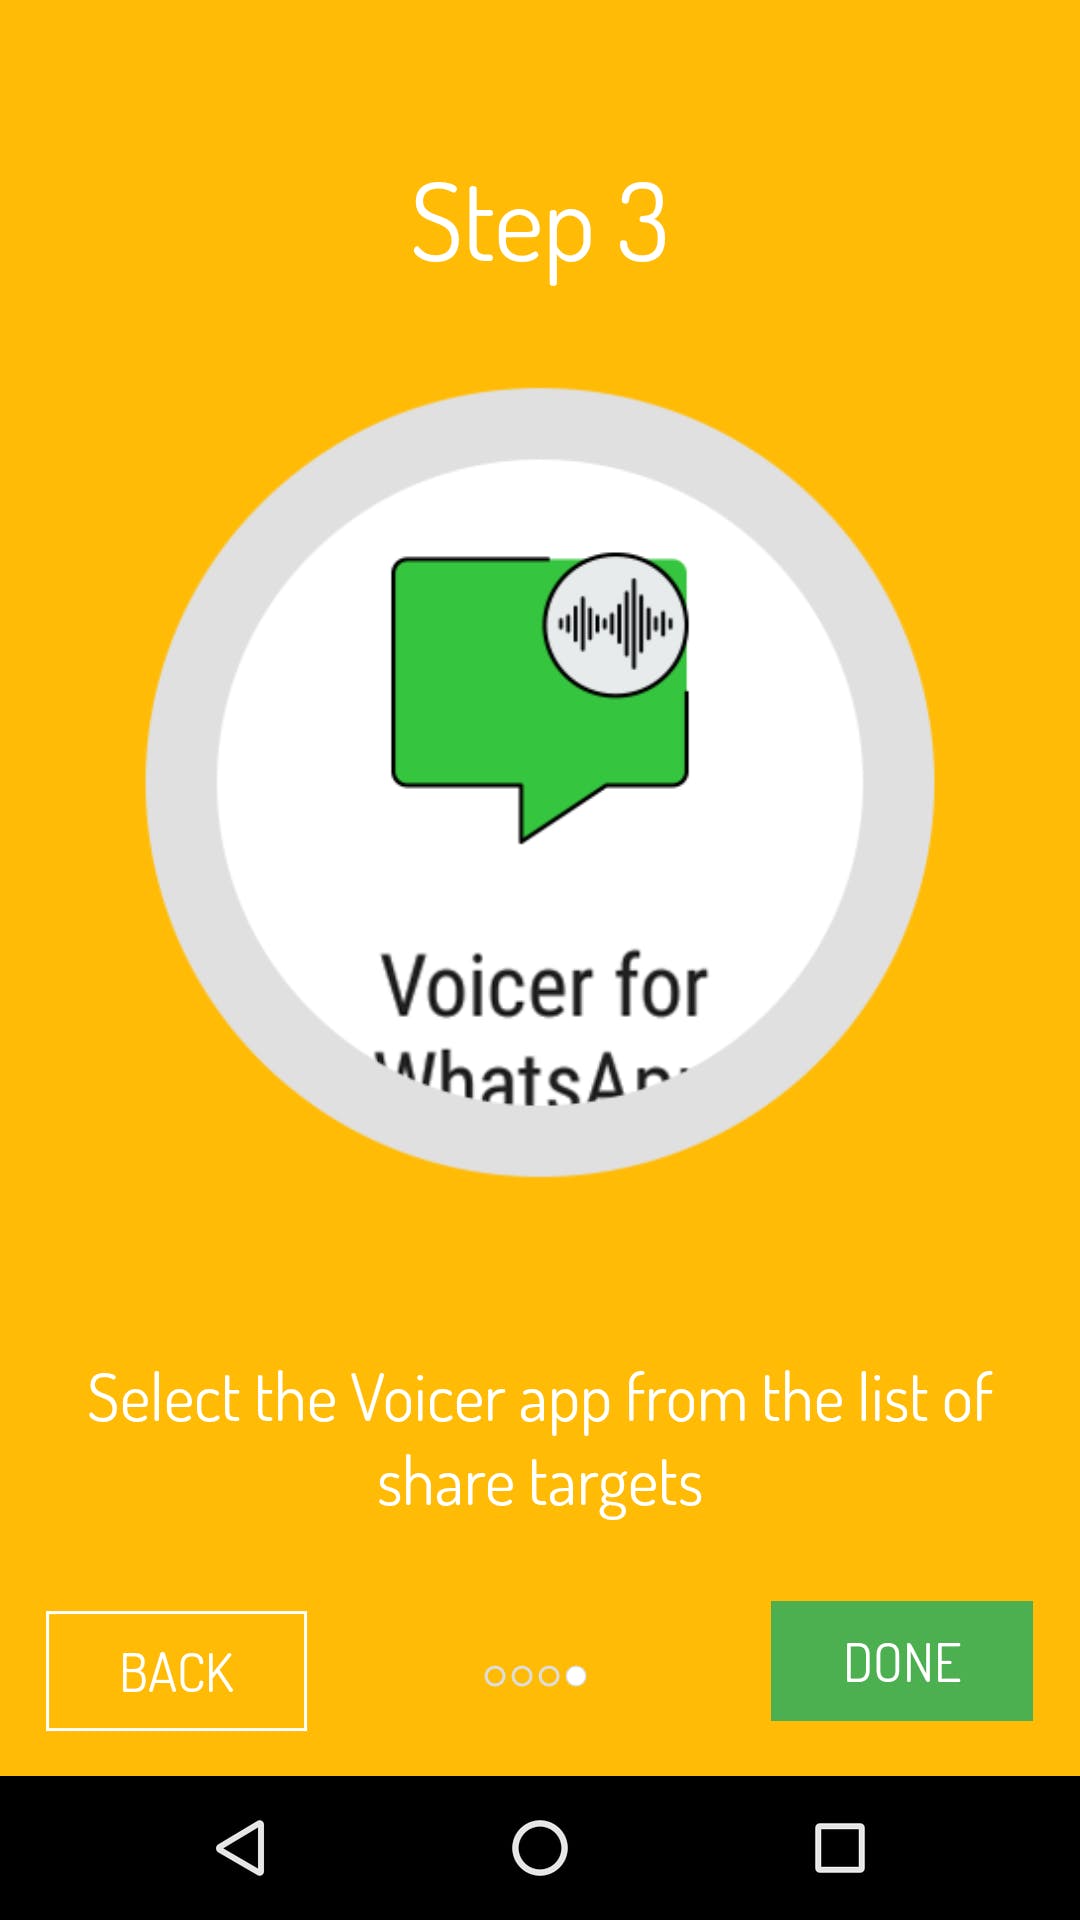 Voicer for WhatsApp media 2